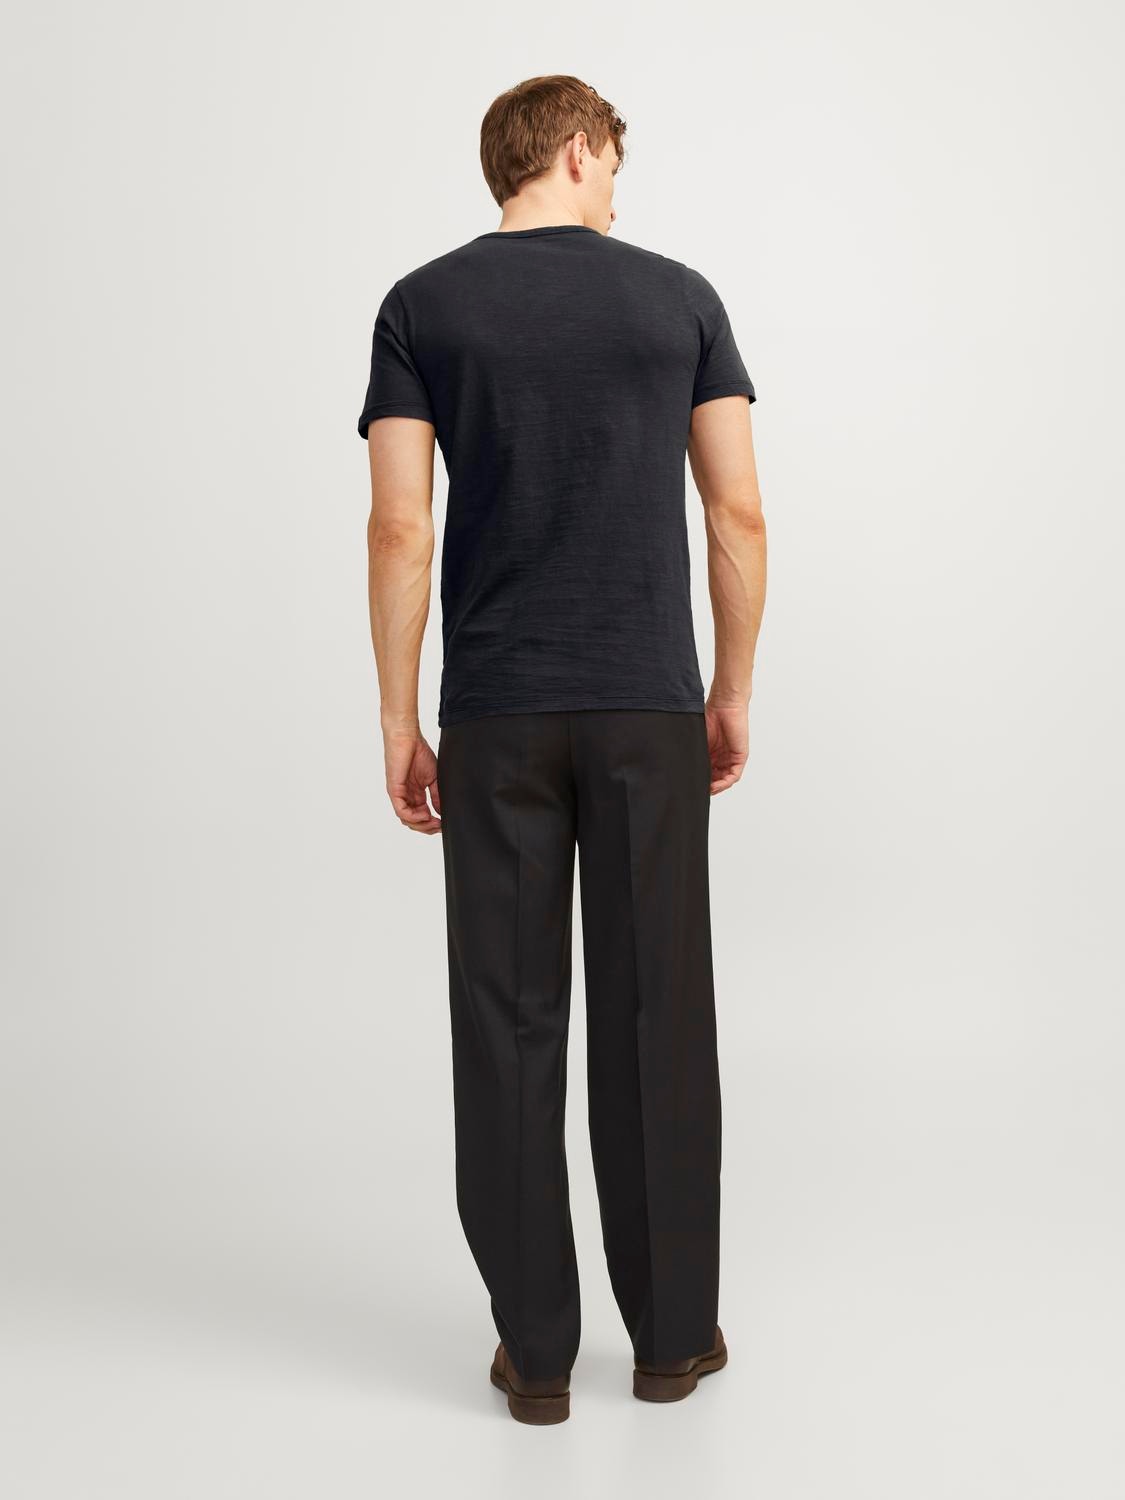 Jack & Jones Melert Splitthals T-skjorte -Black - 12164972